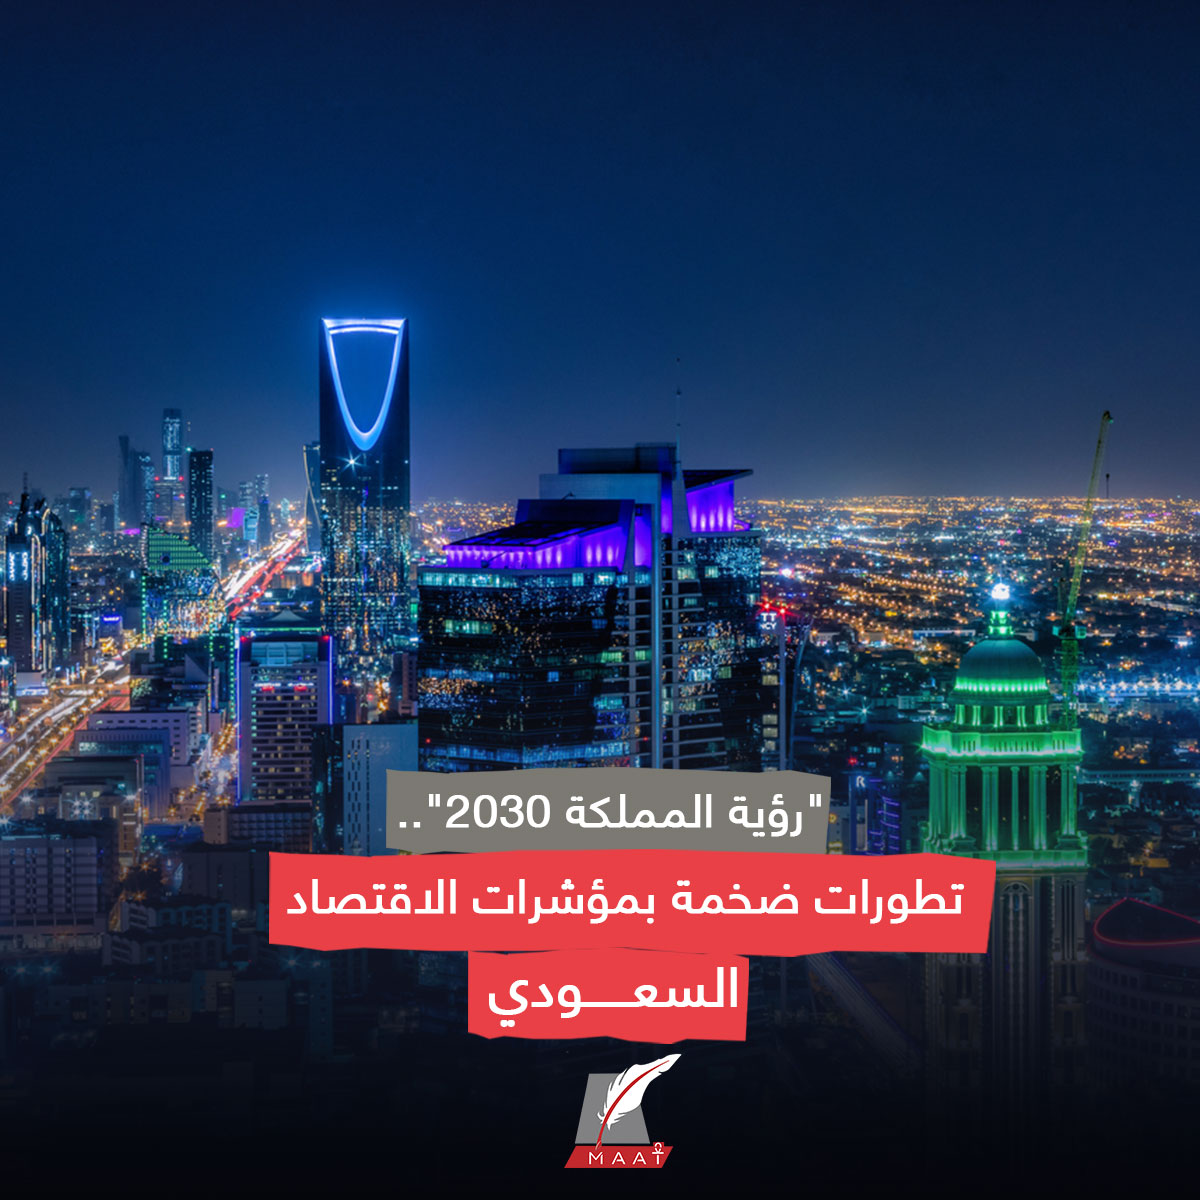 #ماعت_جروب| أظهر تقرير عن أداء 'رؤية السعودية 2030' تقدما كبيرا في مؤشرات اقتصاد المملكة، وذلك بعد مرور 8 أعوام على إطلاقها في 25 أبريل 2016.

وفازت السعودية باستضافة معرض 'إكسبو 2030' بمدينة الرياض، بعد أن اختارها العالم في منافسة مع مدينتي بوسان في كوريا الجنوبية، وروما